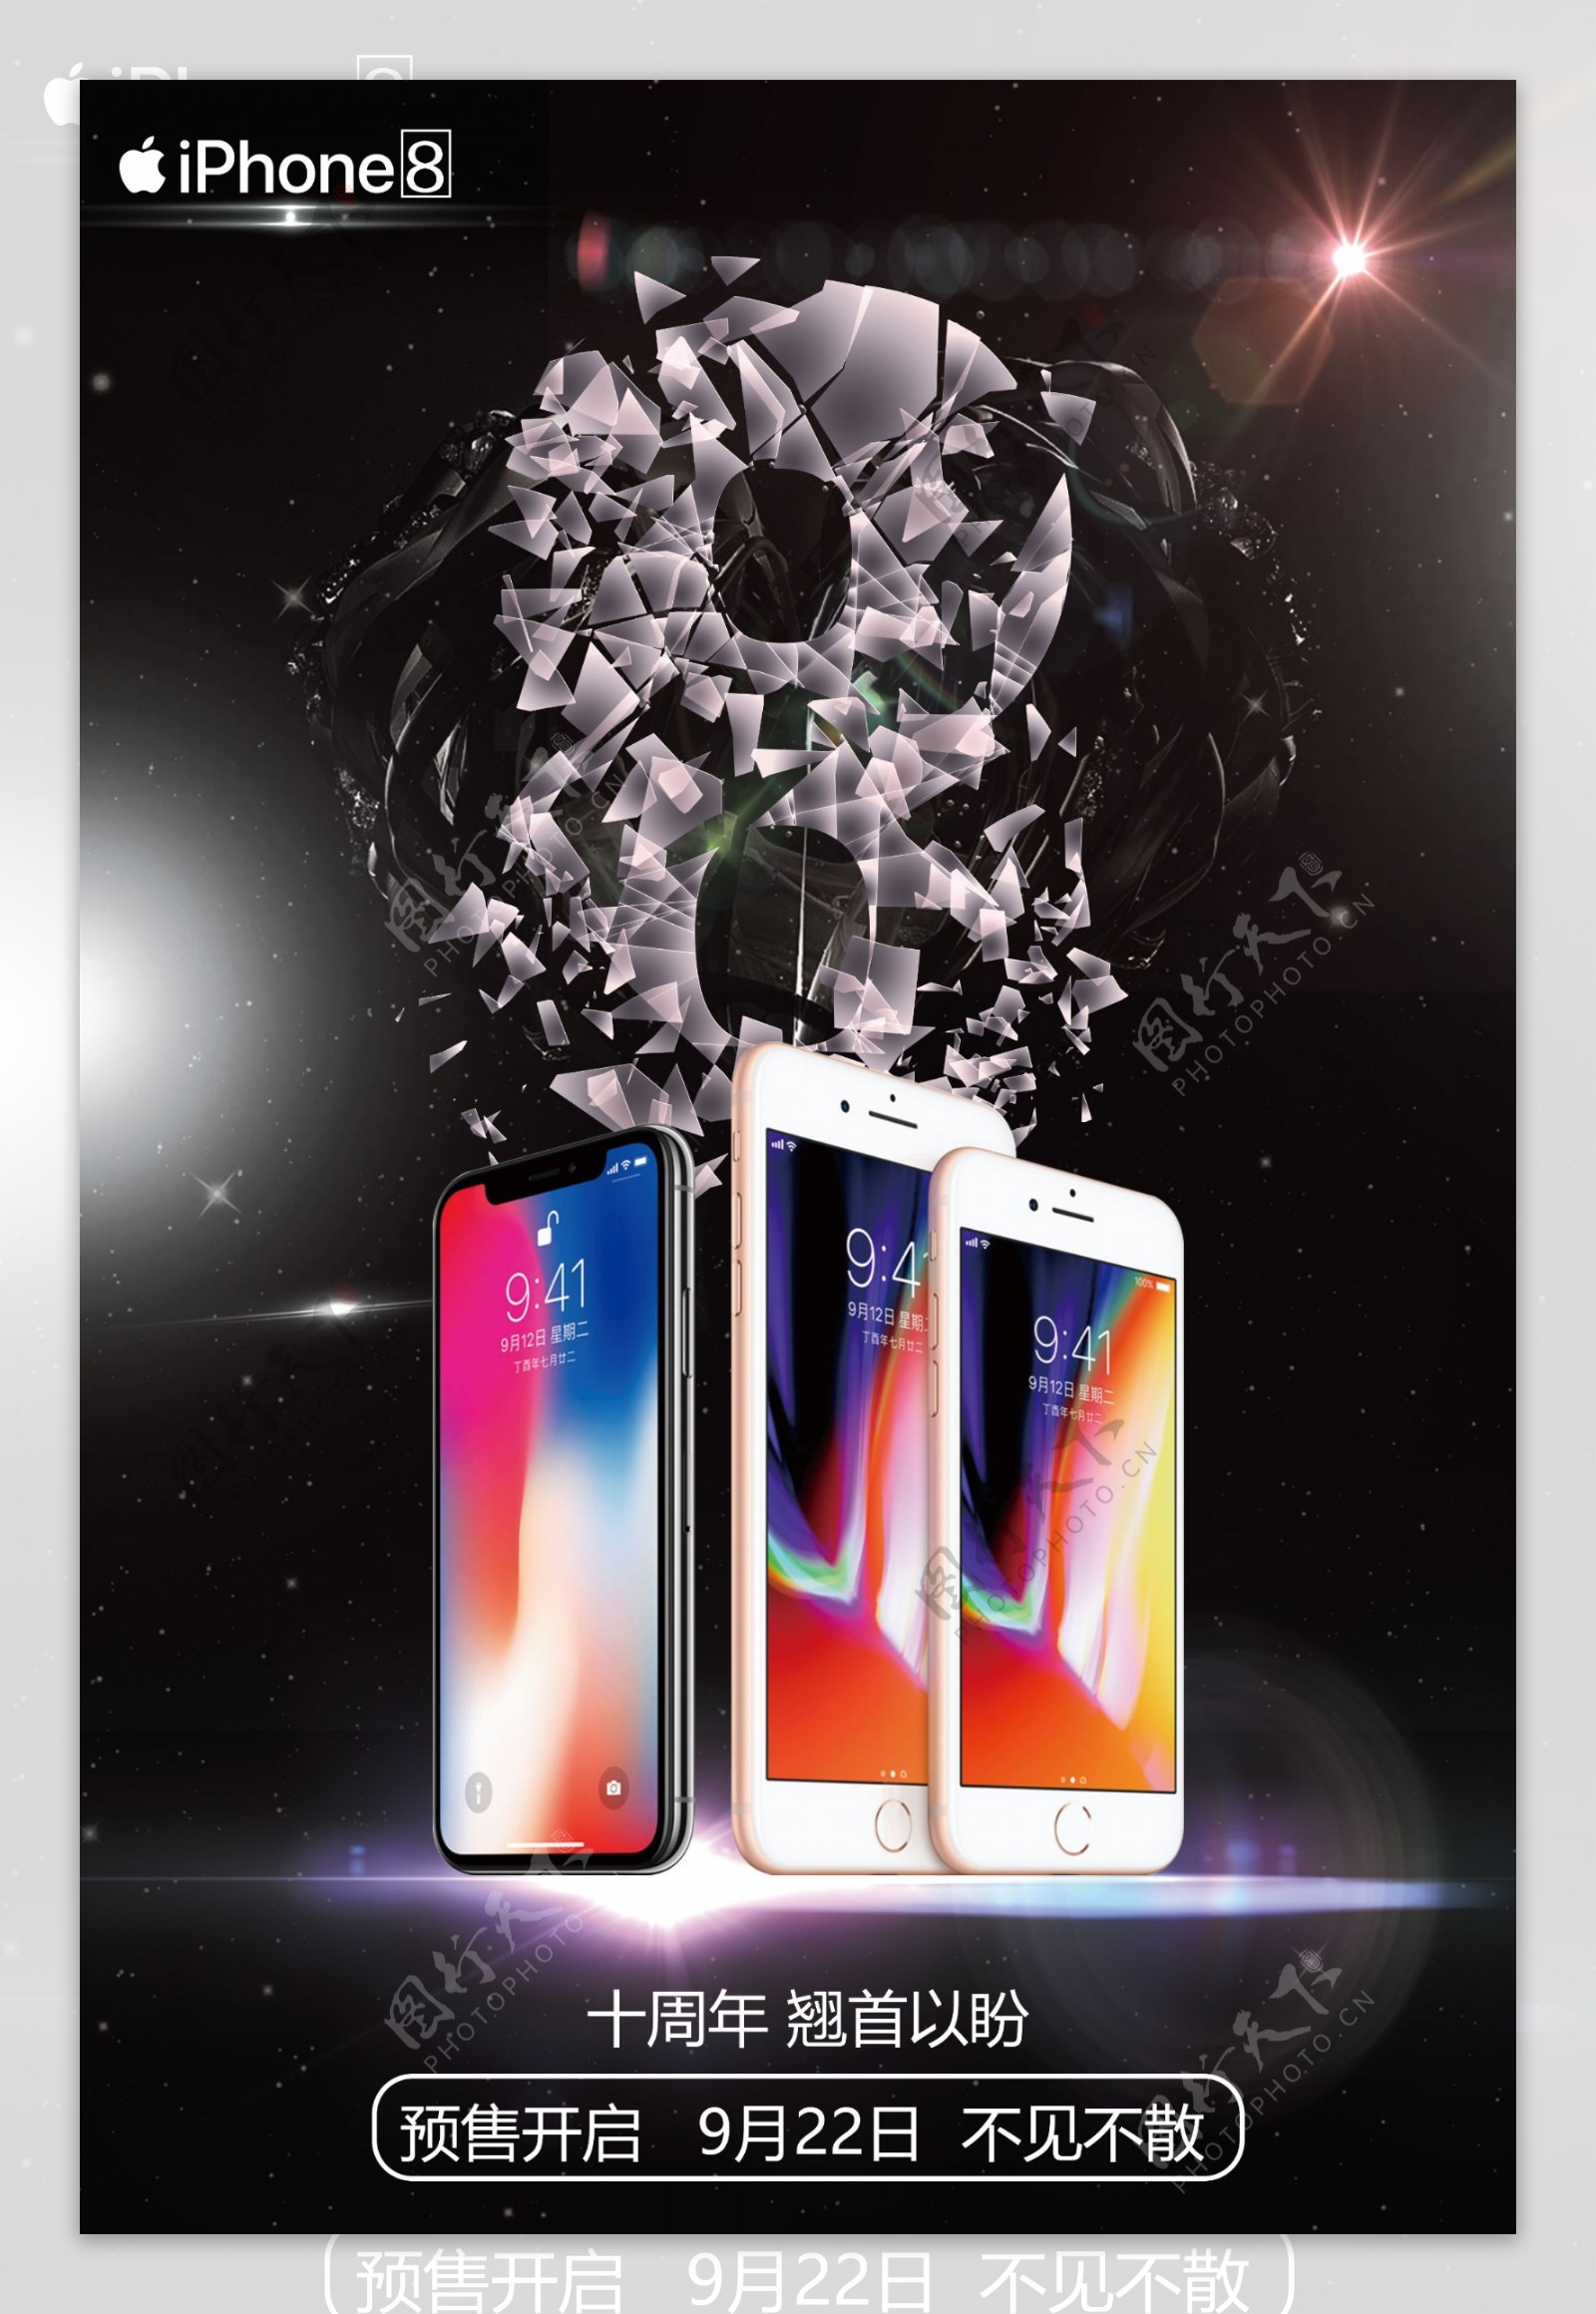 苹果手机iphone8新品上市开售海报